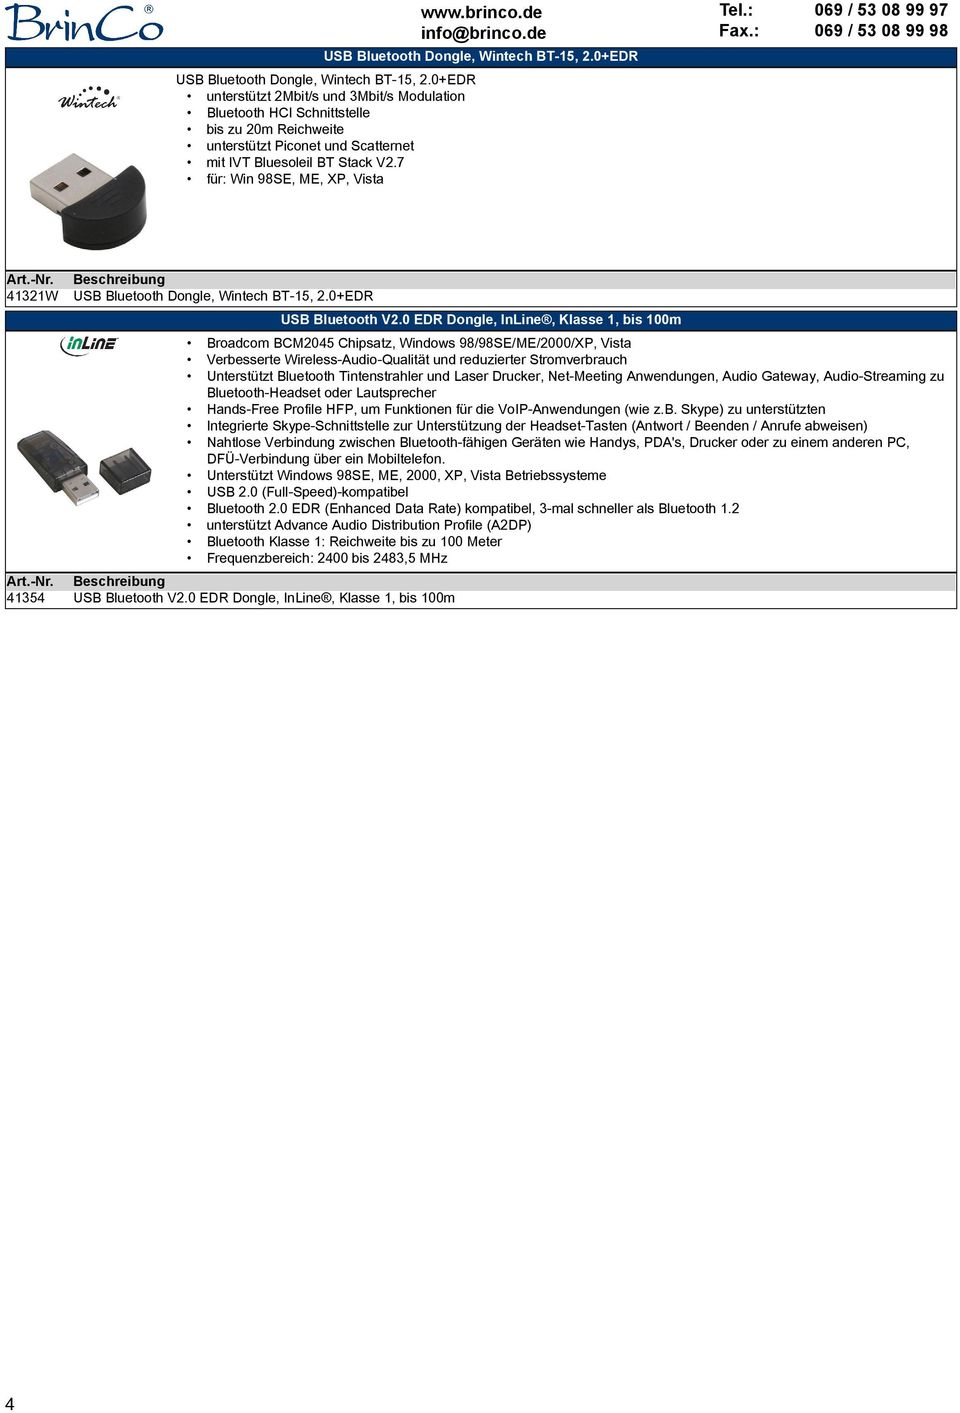 brinco.de info@brinco.de Tel.: Fax.: 069 / 53 08 99 97 069 / 53 08 99 98 41321W 41354 USB Bluetooth Dongle, Wintech BT-15, 2.0+EDR USB Bluetooth V2.